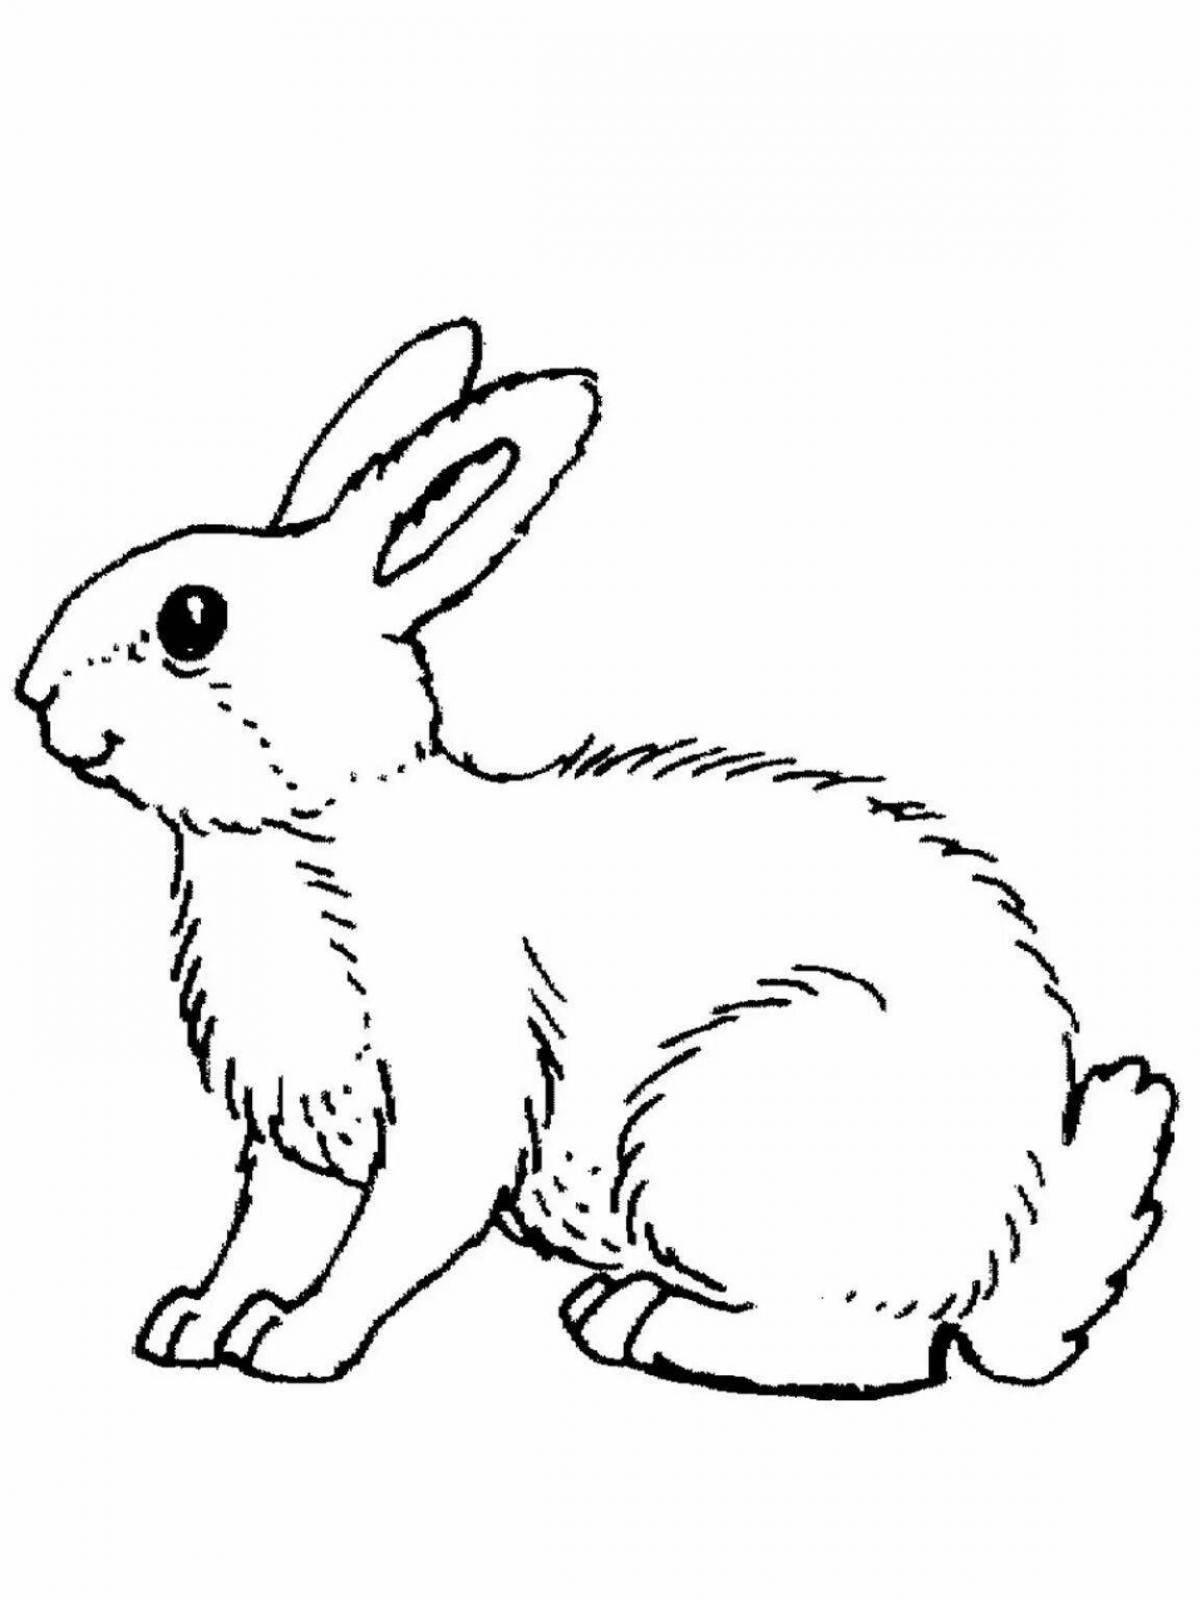 Яркая цветная раскраска рисунок зайца для детей